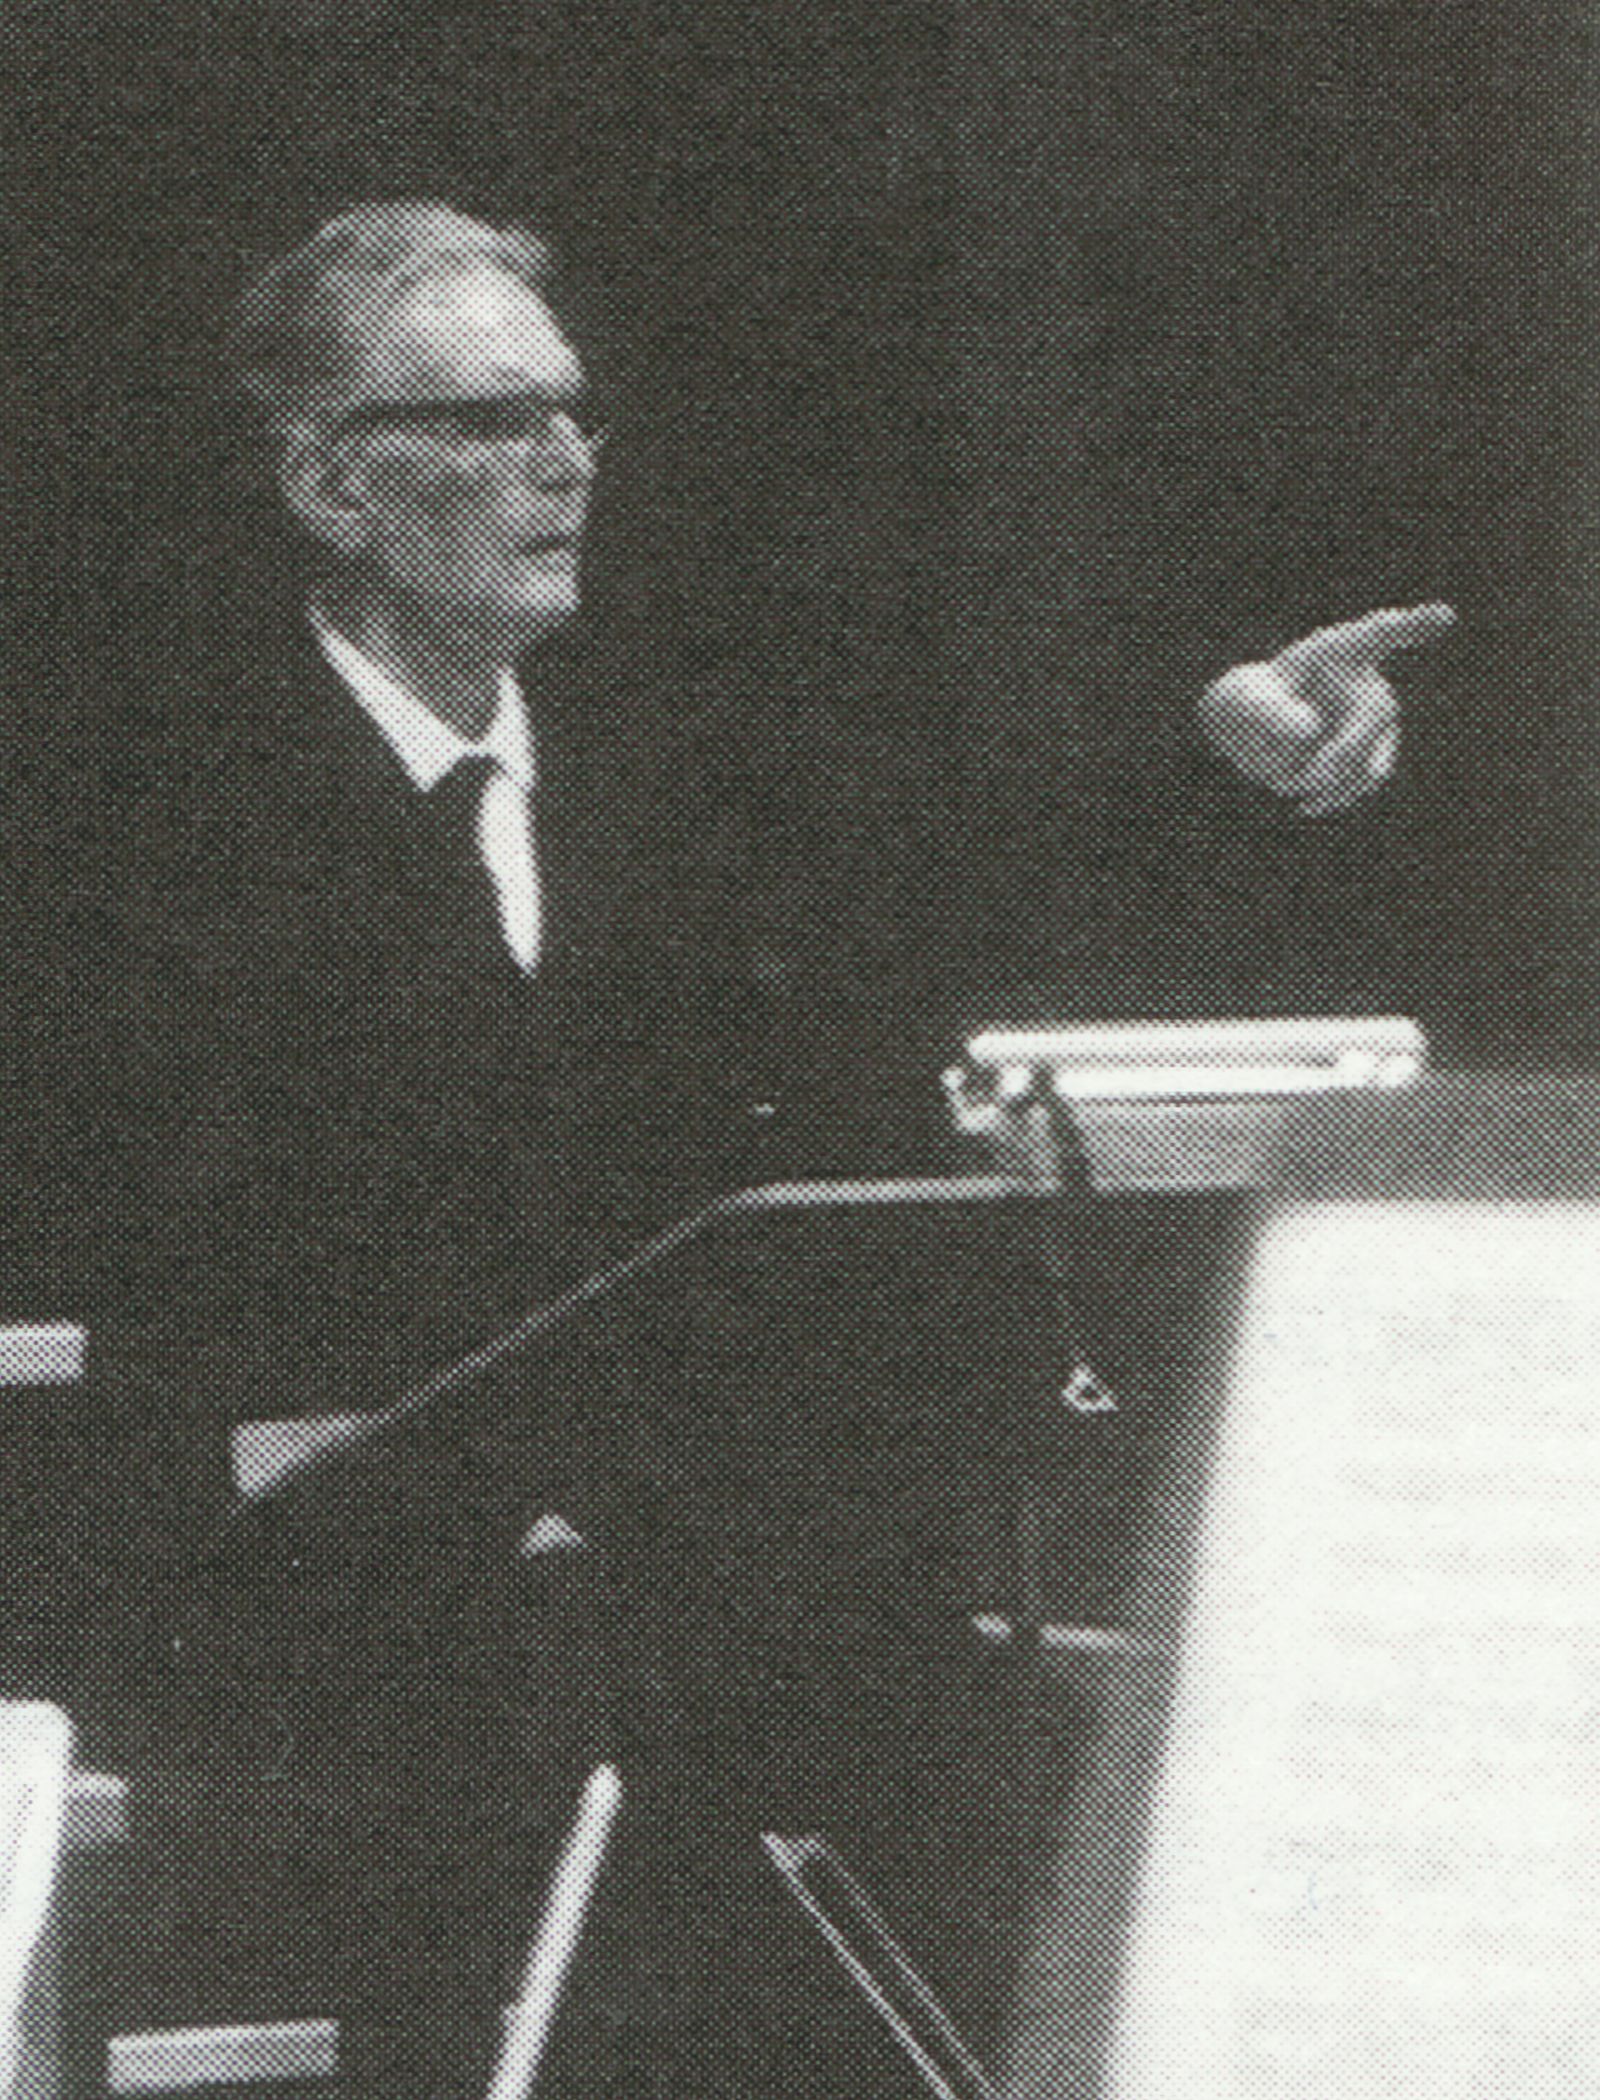 Otto KLEMPERER en répétition, 1960, cité d'une photo de Werner Neumeister publiée en page 125 du livre «50. Jahre Symphonieorchester des Bayerischen Rundfunks», cliquer pour une vue agrandie